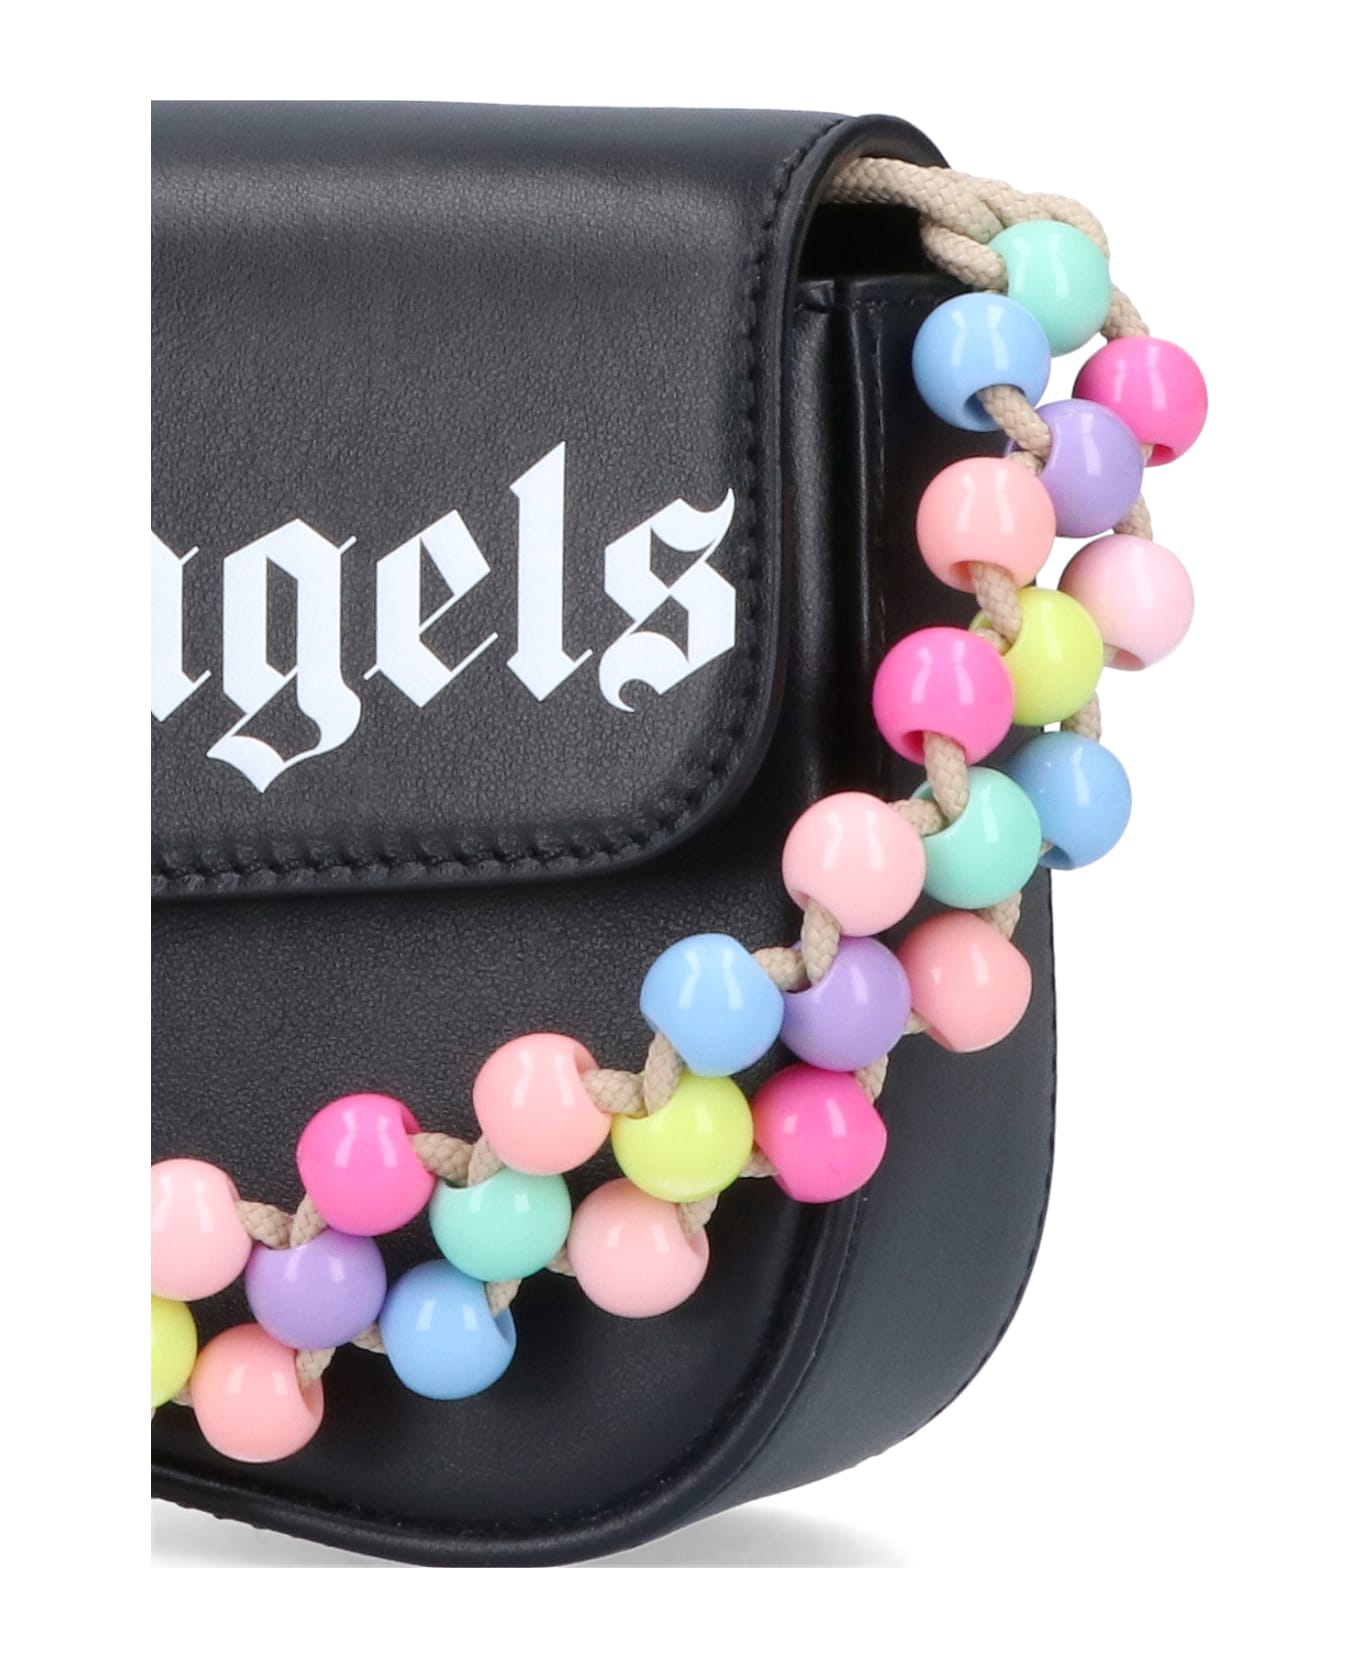 Palm Angels Beads Strap Crash Shoulder Bag - Black